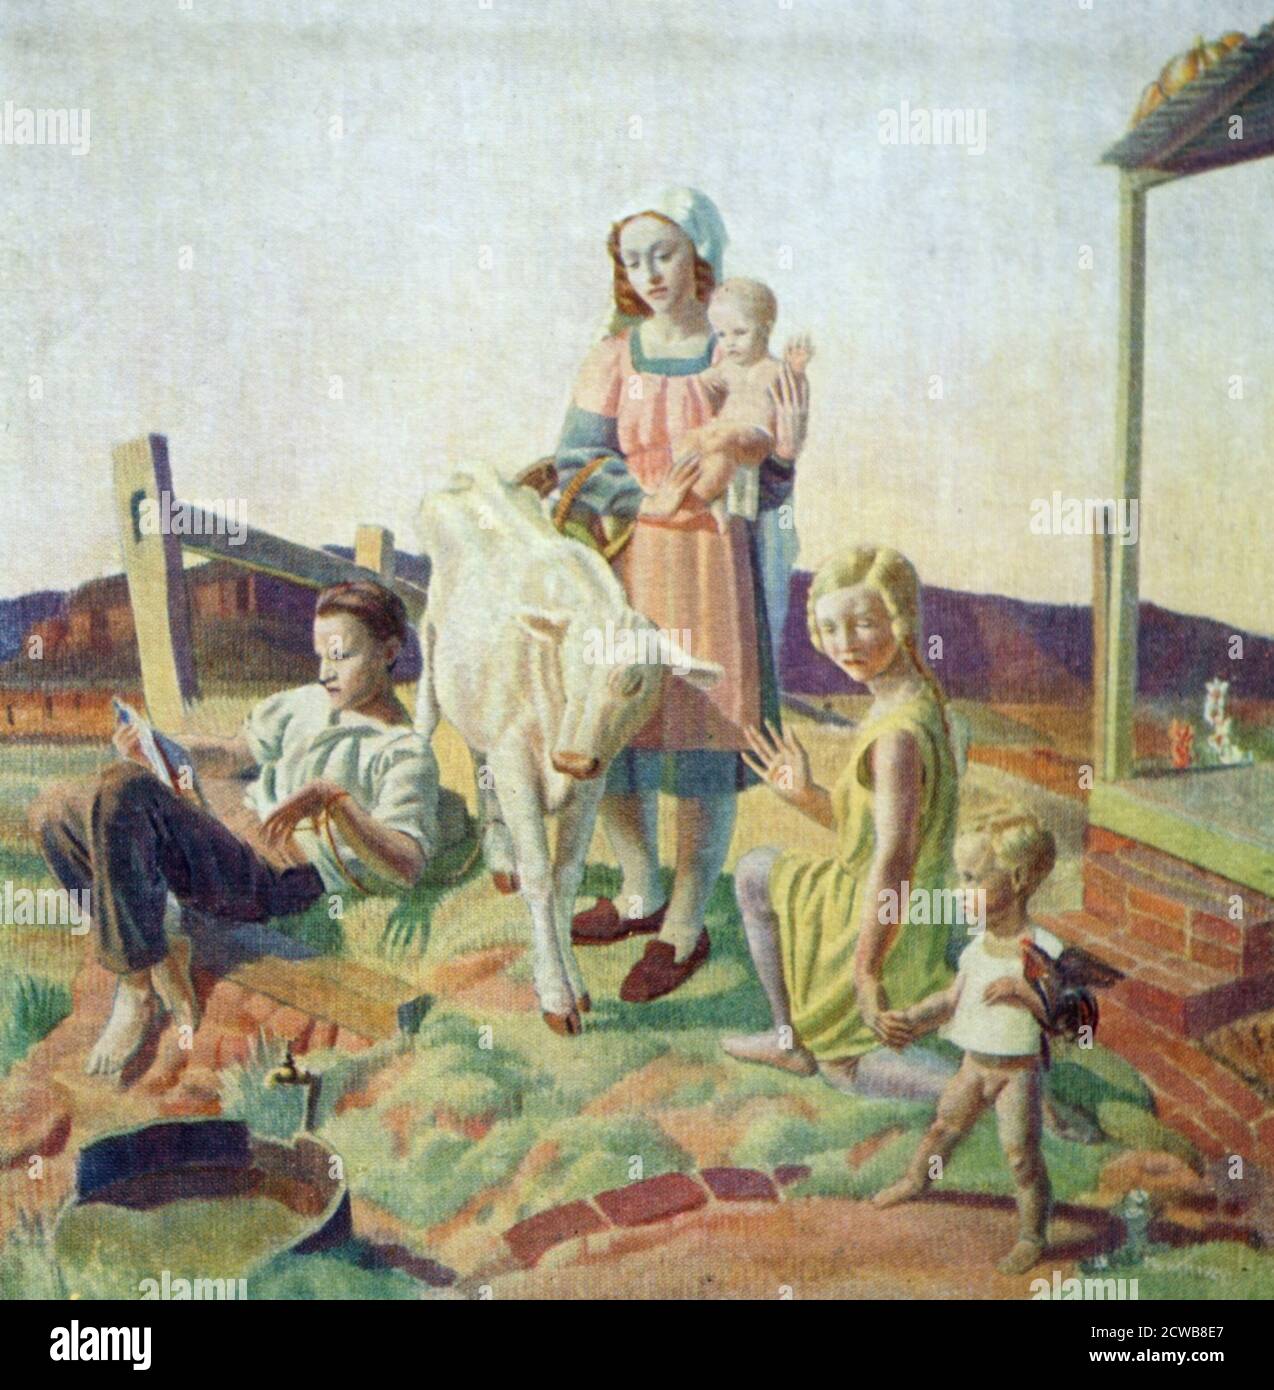 Painting titled 'The Calf' by Arthur J. Murch. Arthur Murch (1902-1989) an Australian artist. Stock Photo